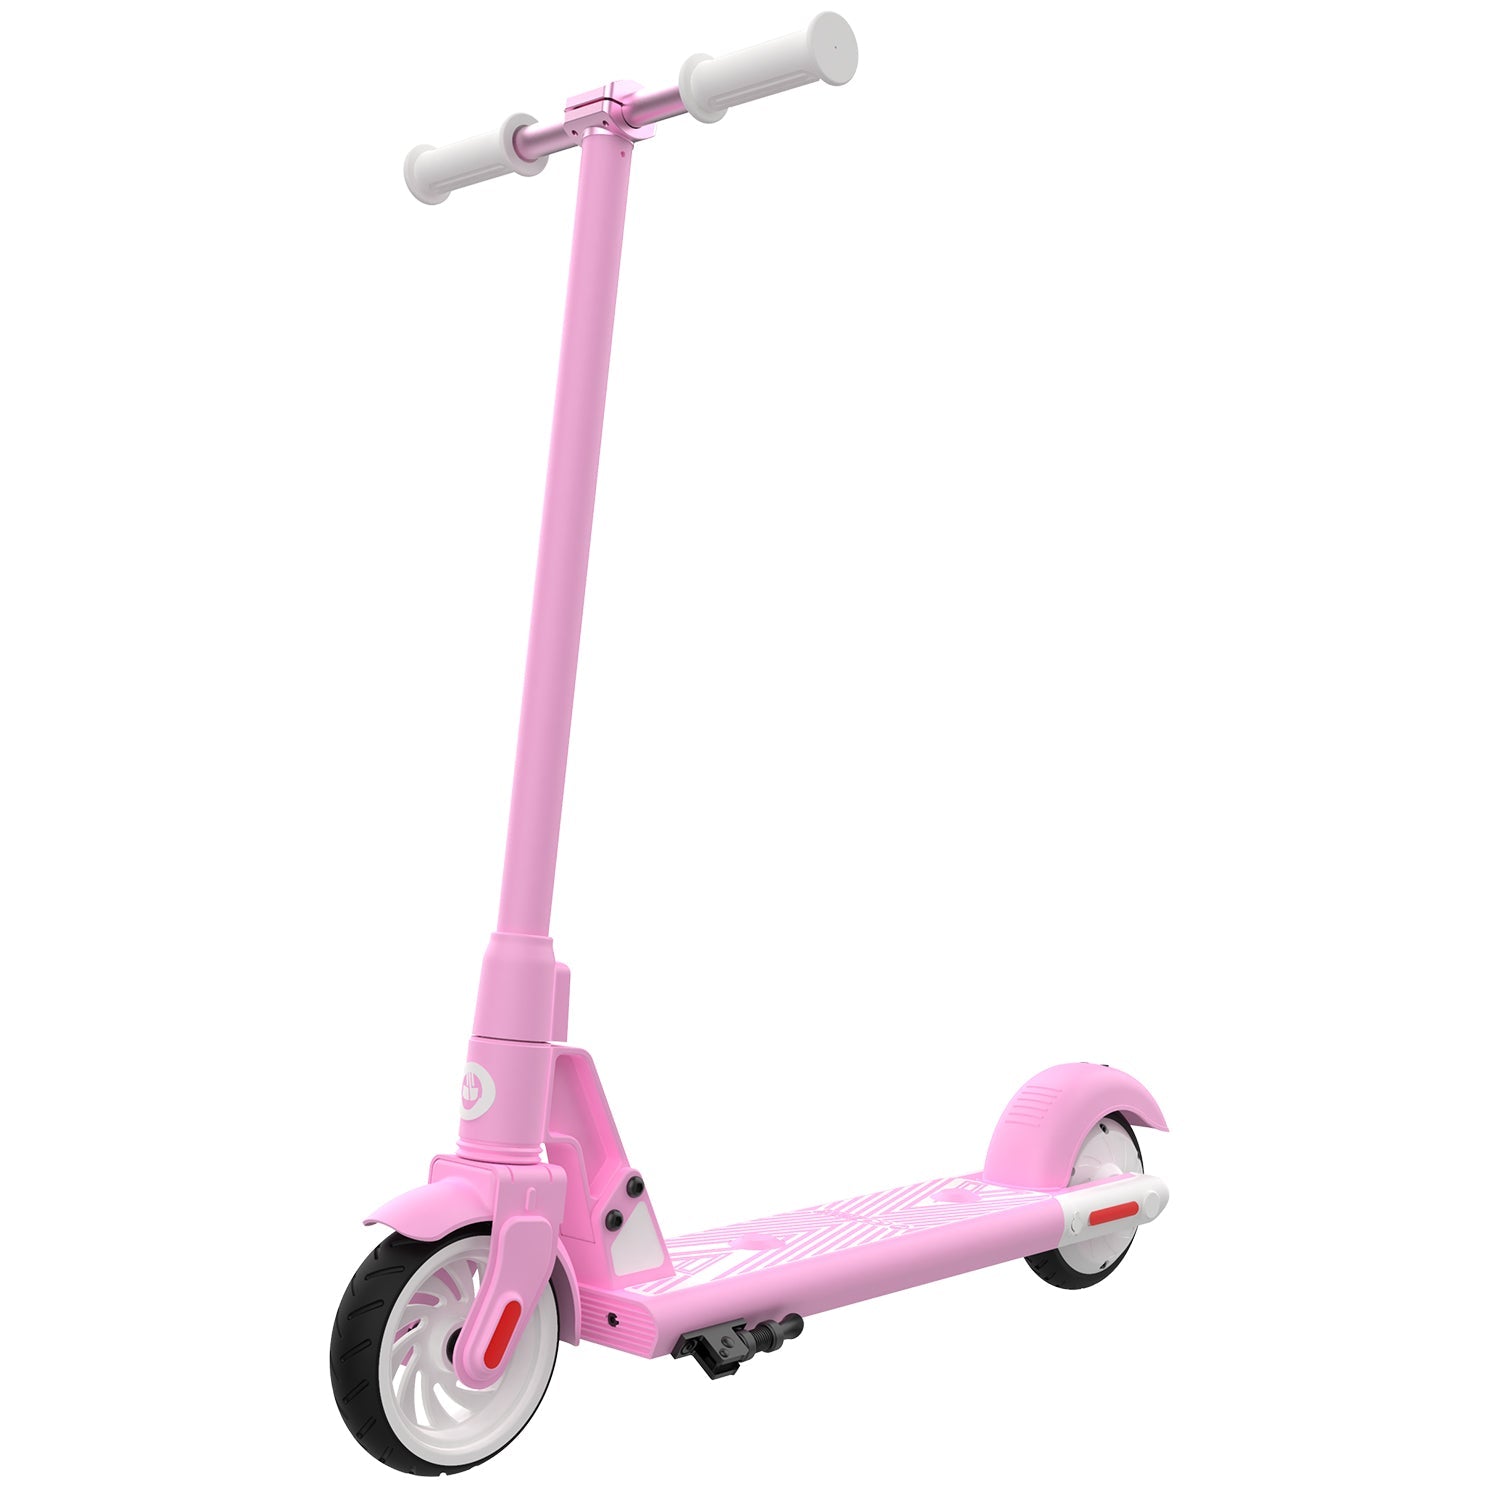 AkitoyStore - Últimos disponibles⚠️ El Gotrax GKS es un scooter eléctrico  diseñado para niños entre 6 y 12 años que les permite moverse de forma  divertida y segura. Tiene una estructura robusta